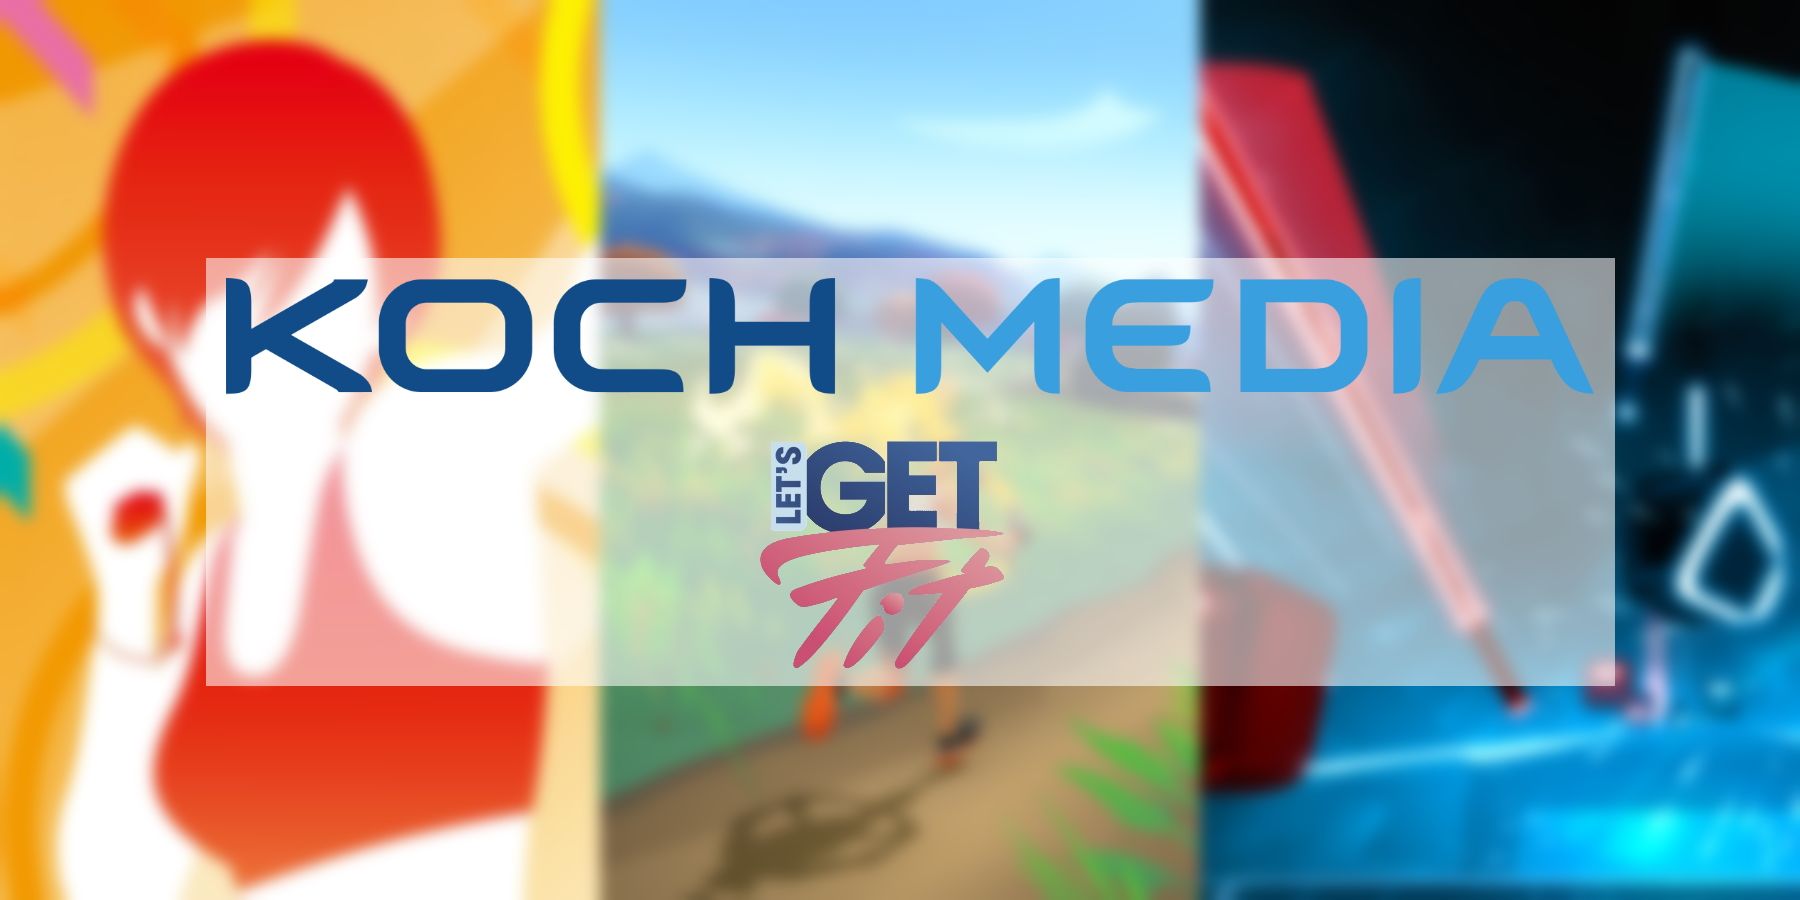 koch-media-lets-get-fit-fitness-game